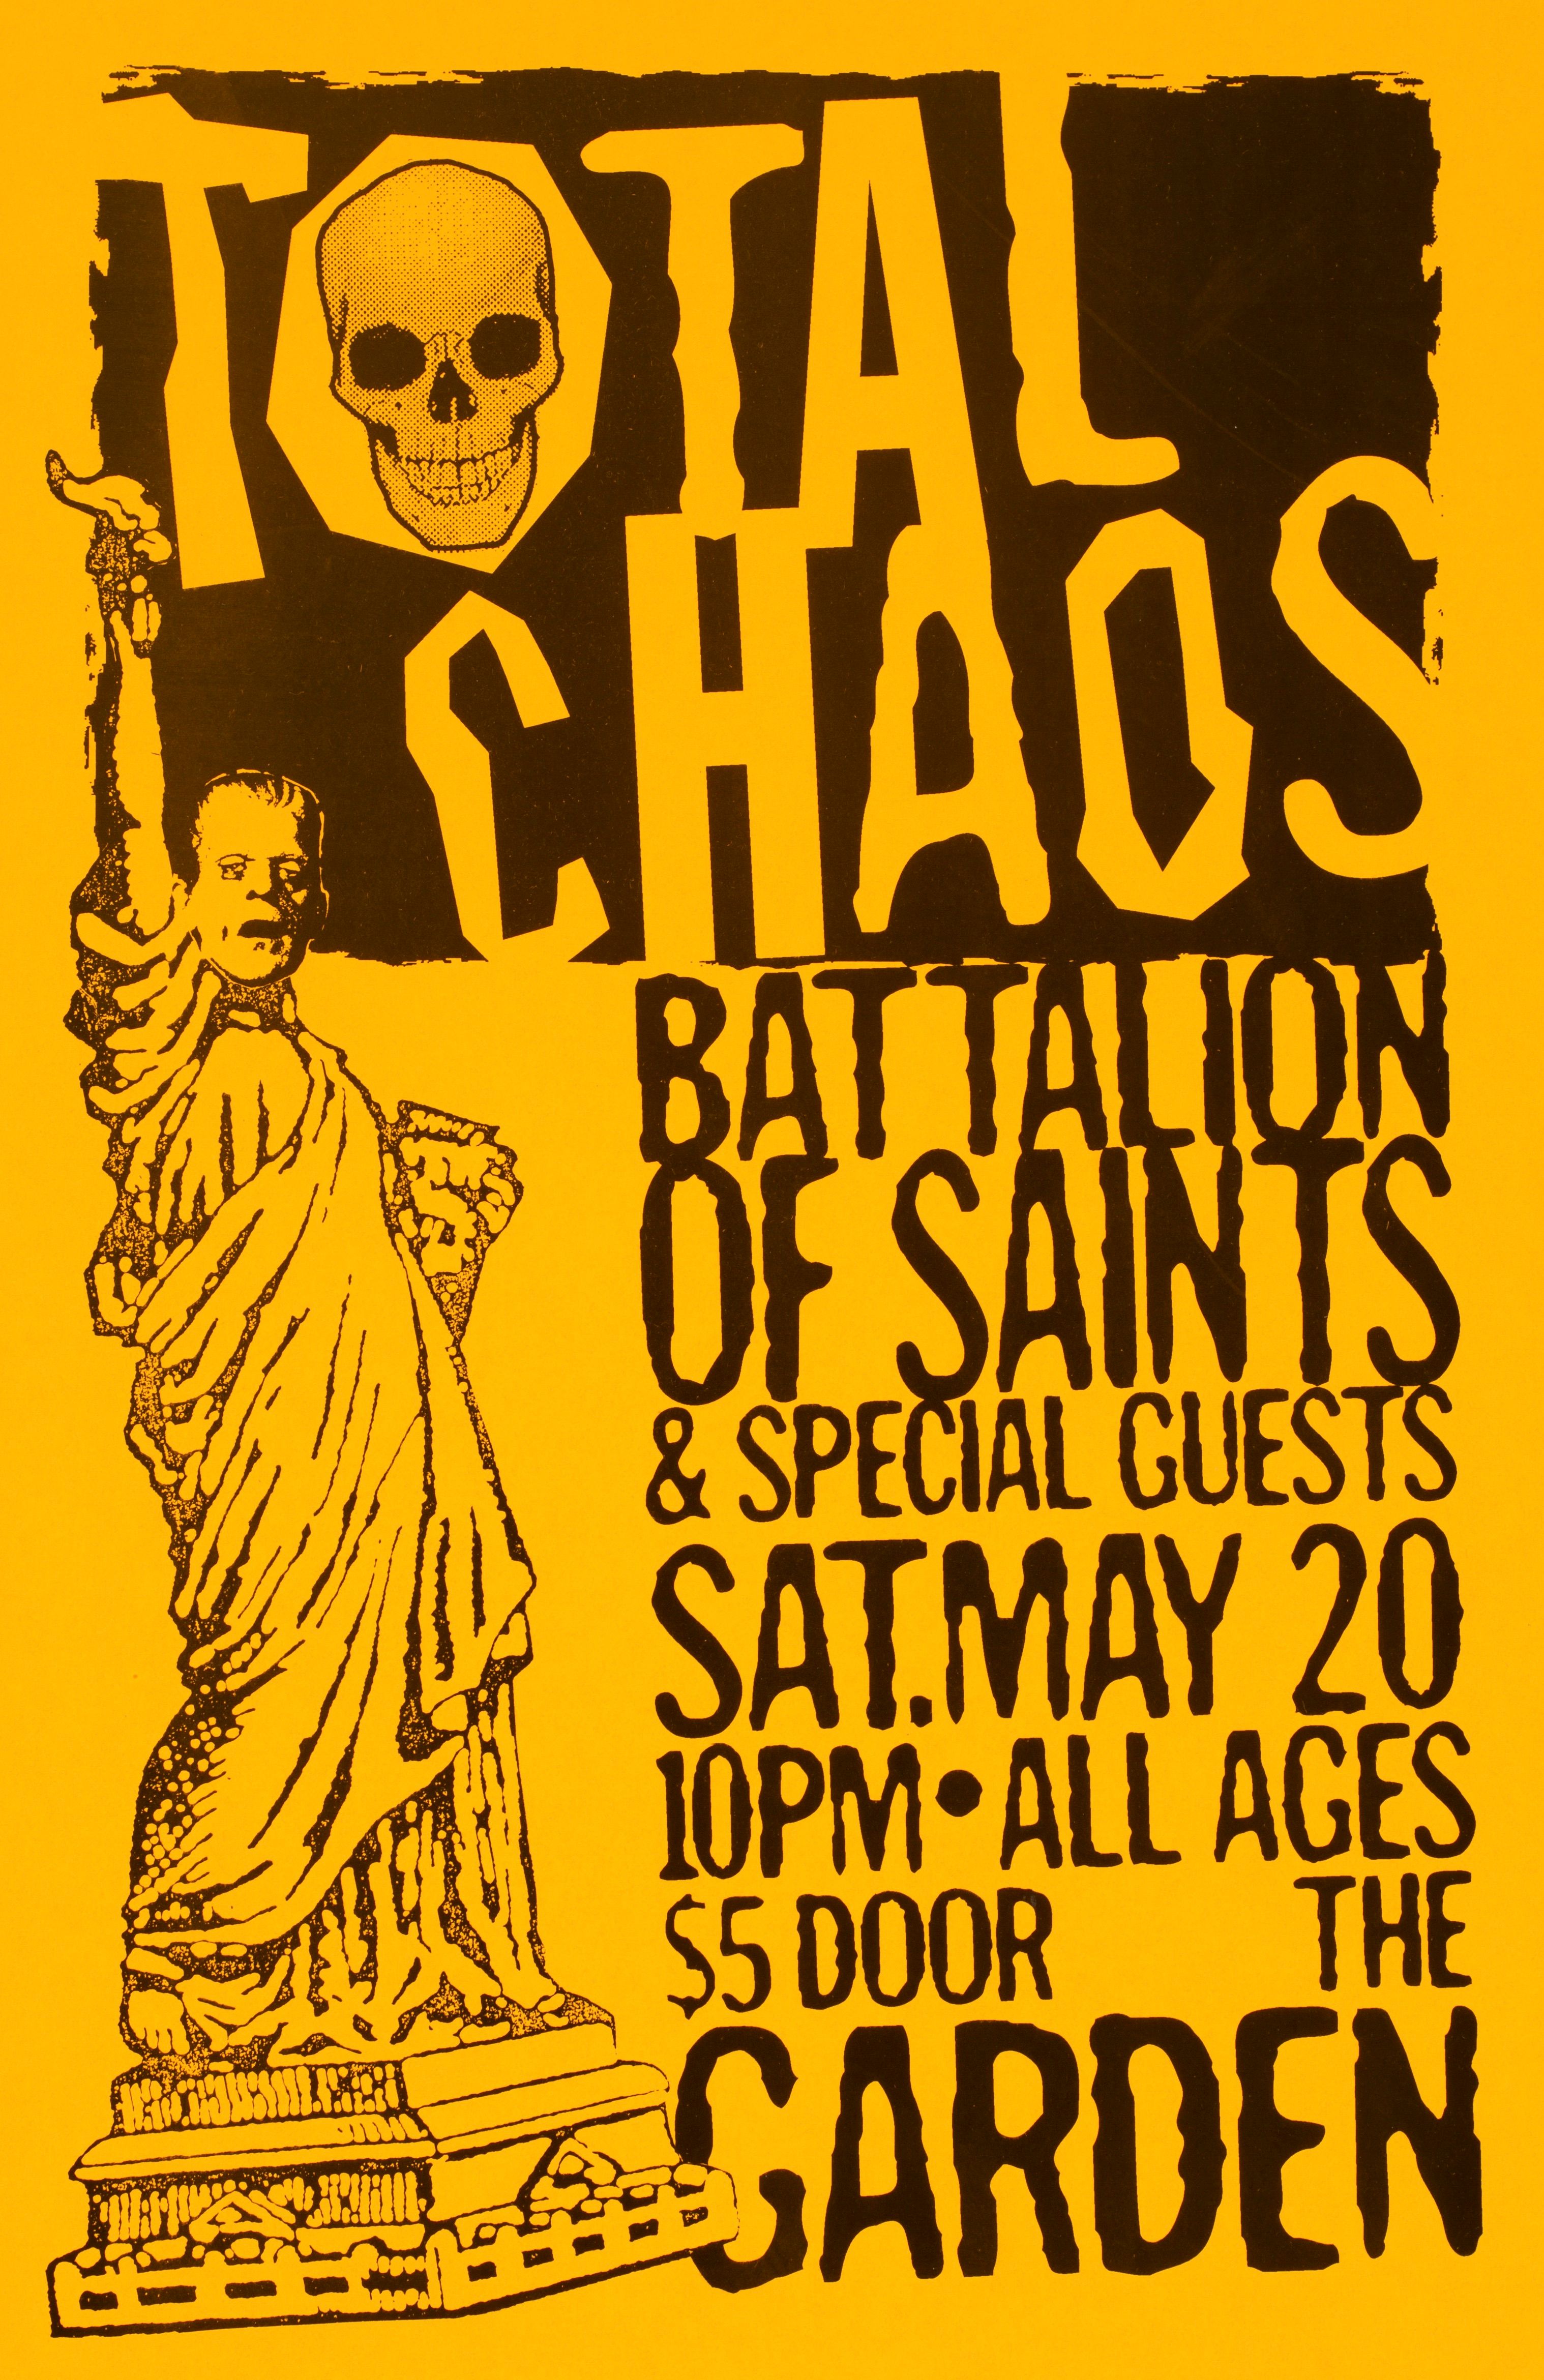 MXP-244.4 Total Chaos The Garden 1996 Concert Poster